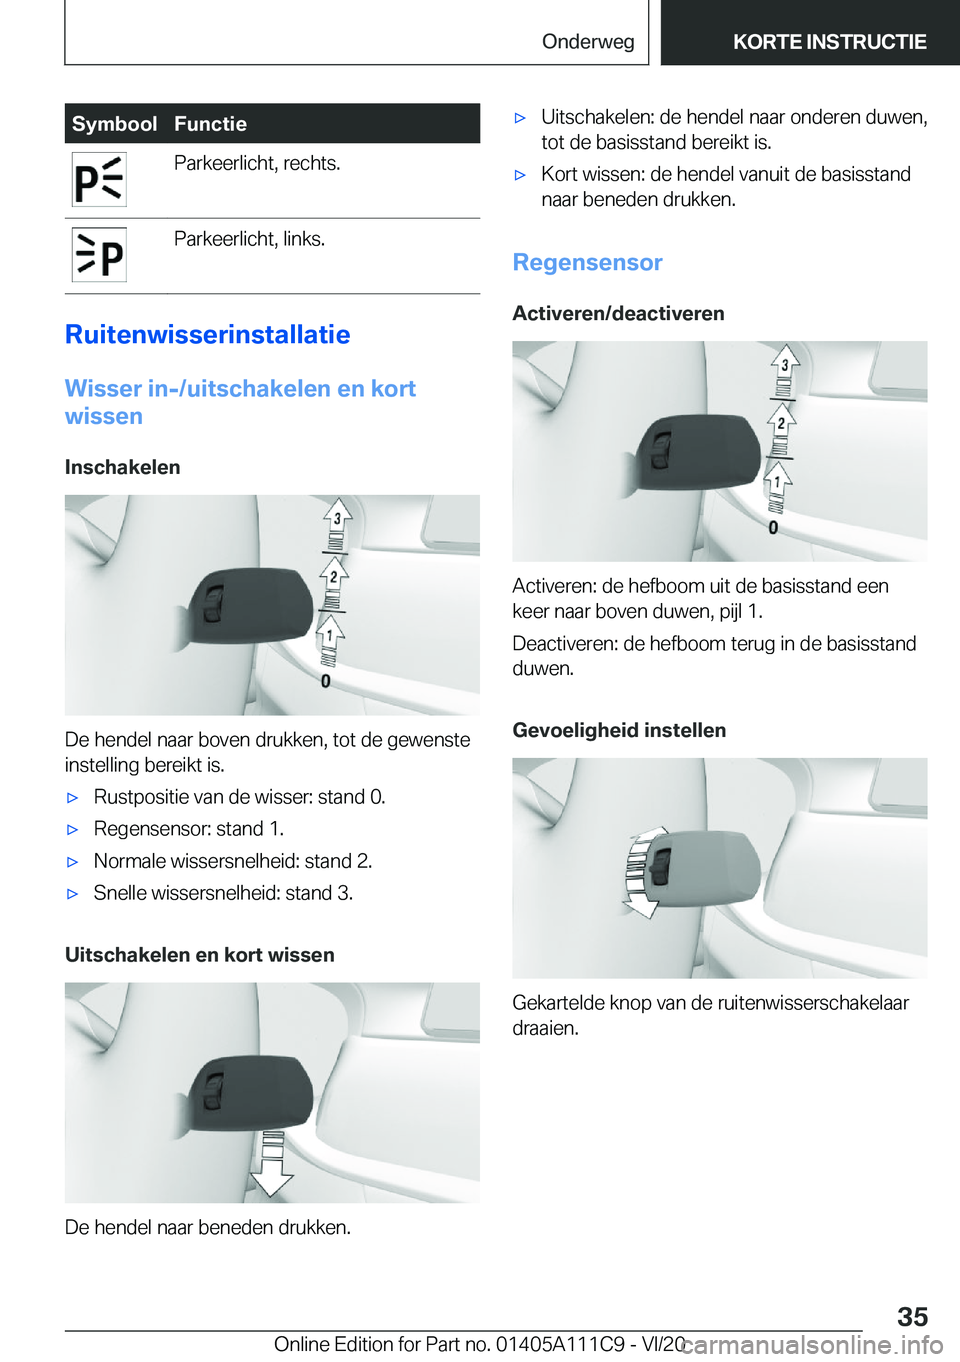 BMW 3 SERIES SEDAN PLUG-IN HYBRID 2021  Instructieboekjes (in Dutch) �S�y�m�b�o�o�l�F�u�n�c�t�i�e�P�a�r�k�e�e�r�l�i�c�h�t�,��r�e�c�h�t�s�.�P�a�r�k�e�e�r�l�i�c�h�t�,��l�i�n�k�s�.
�R�u�i�t�e�n�w�i�s�s�e�r�i�n�s�t�a�l�l�a�t�i�e�W�i�s�s�e�r��i�n�-�/�u�i�t�s�c�h�a�k�e�l�